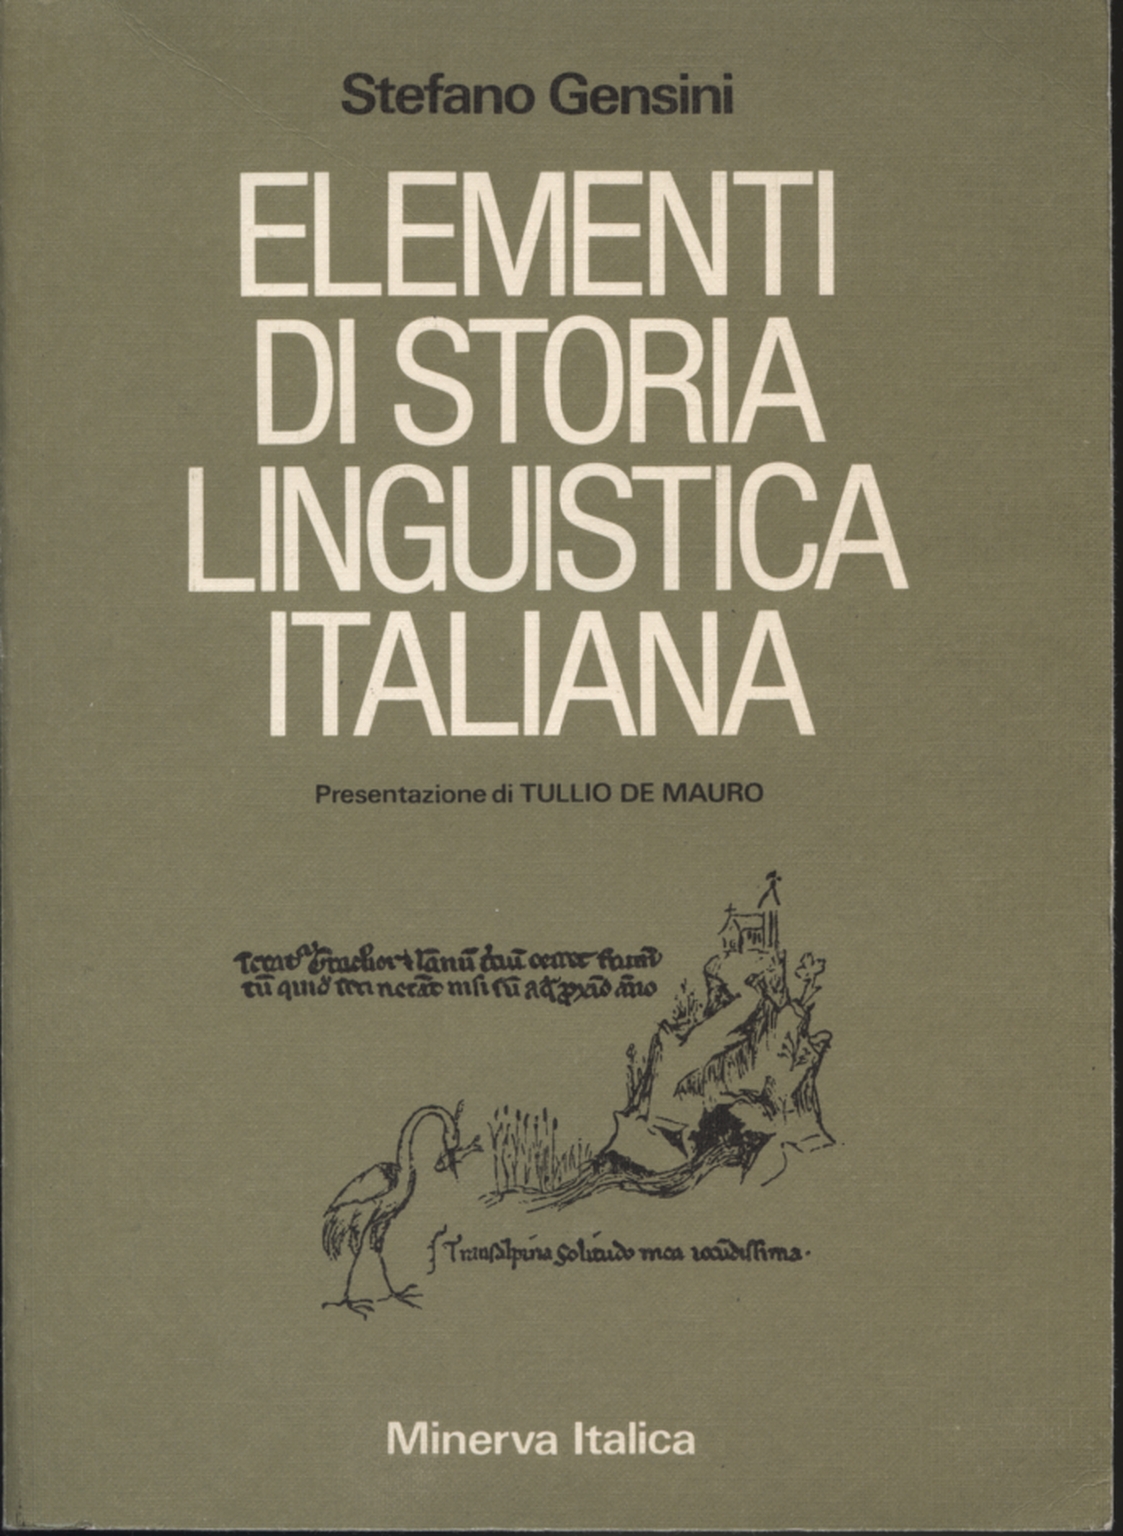 Elementi di storia di linguistica italiana, Stefano Gensini